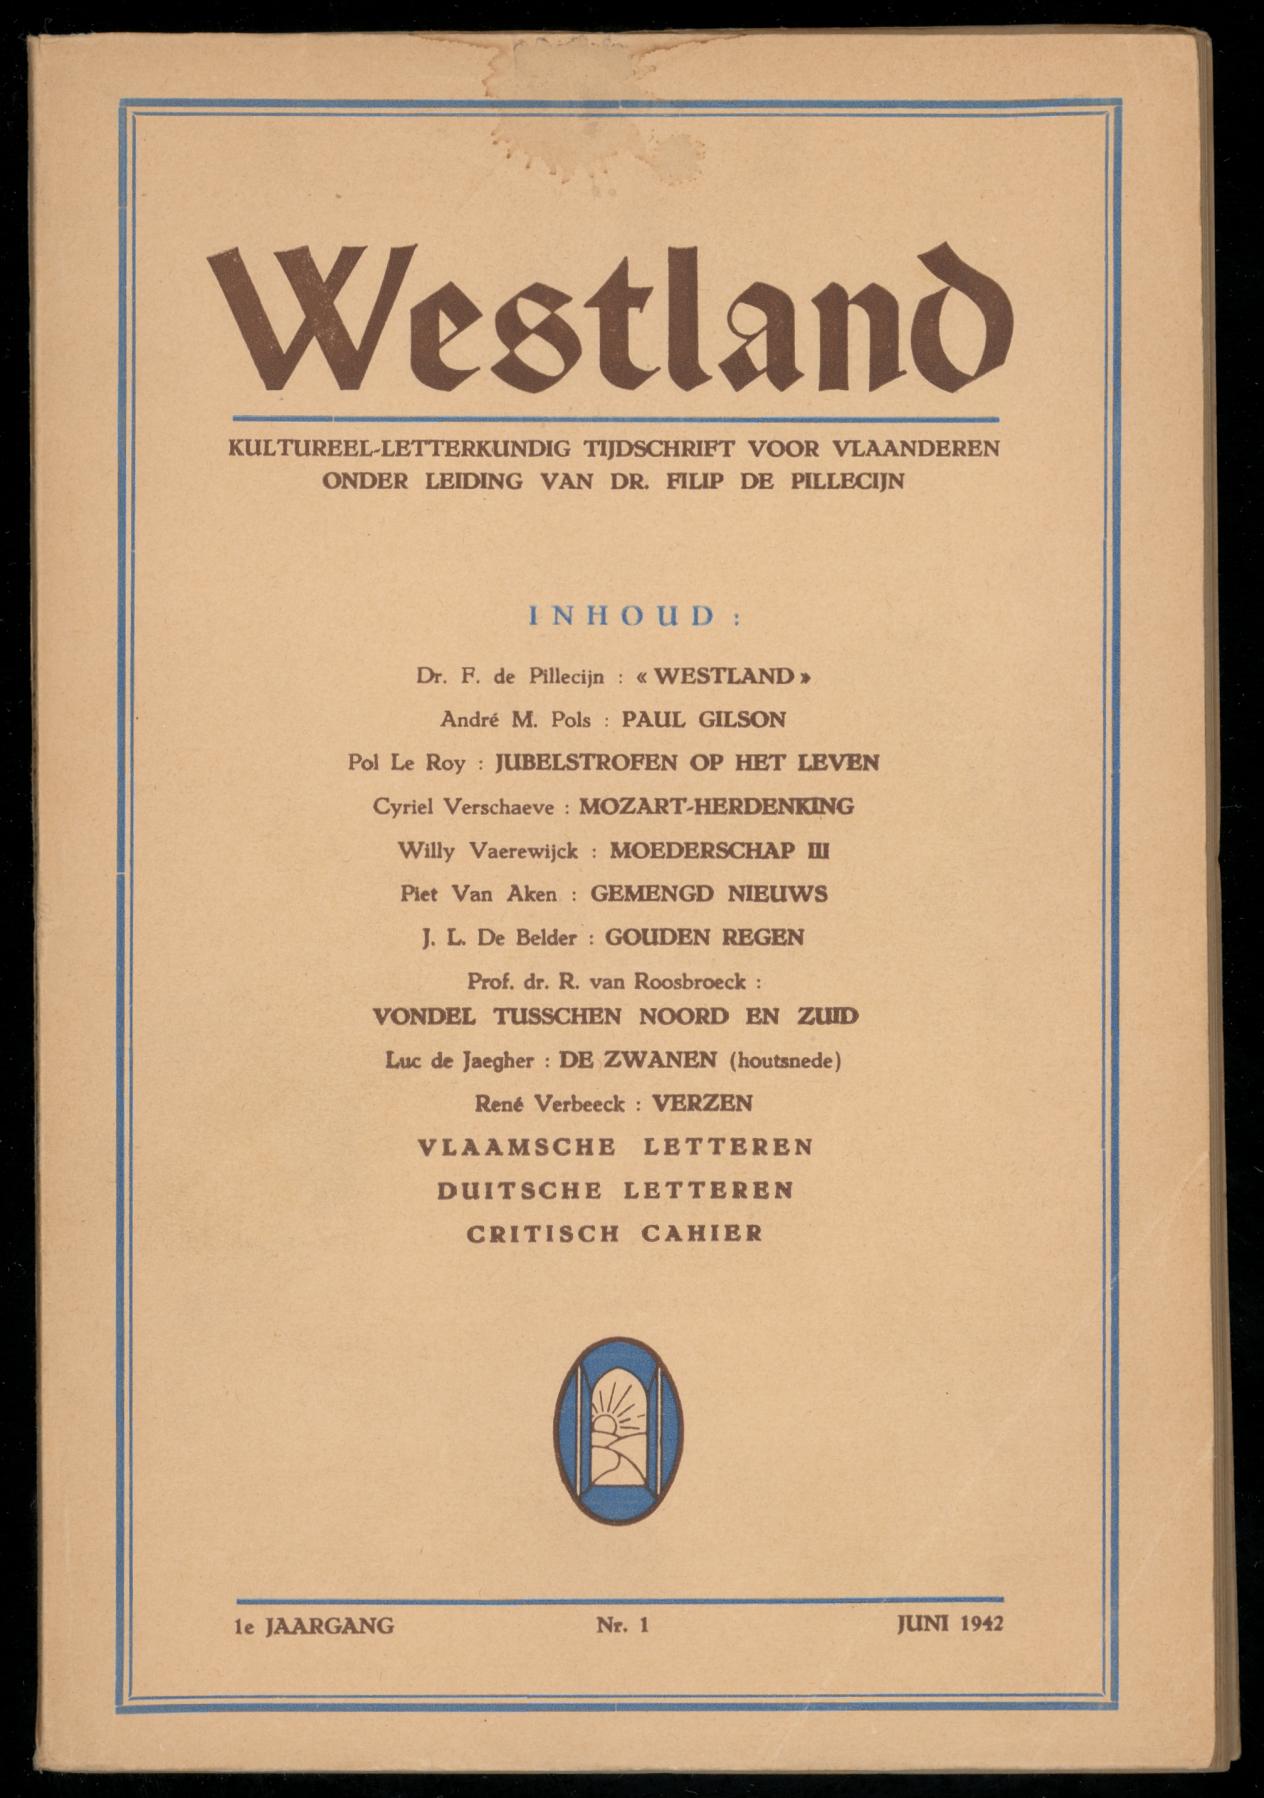 Cover van de eerste uitgave van Westland in juni 1942